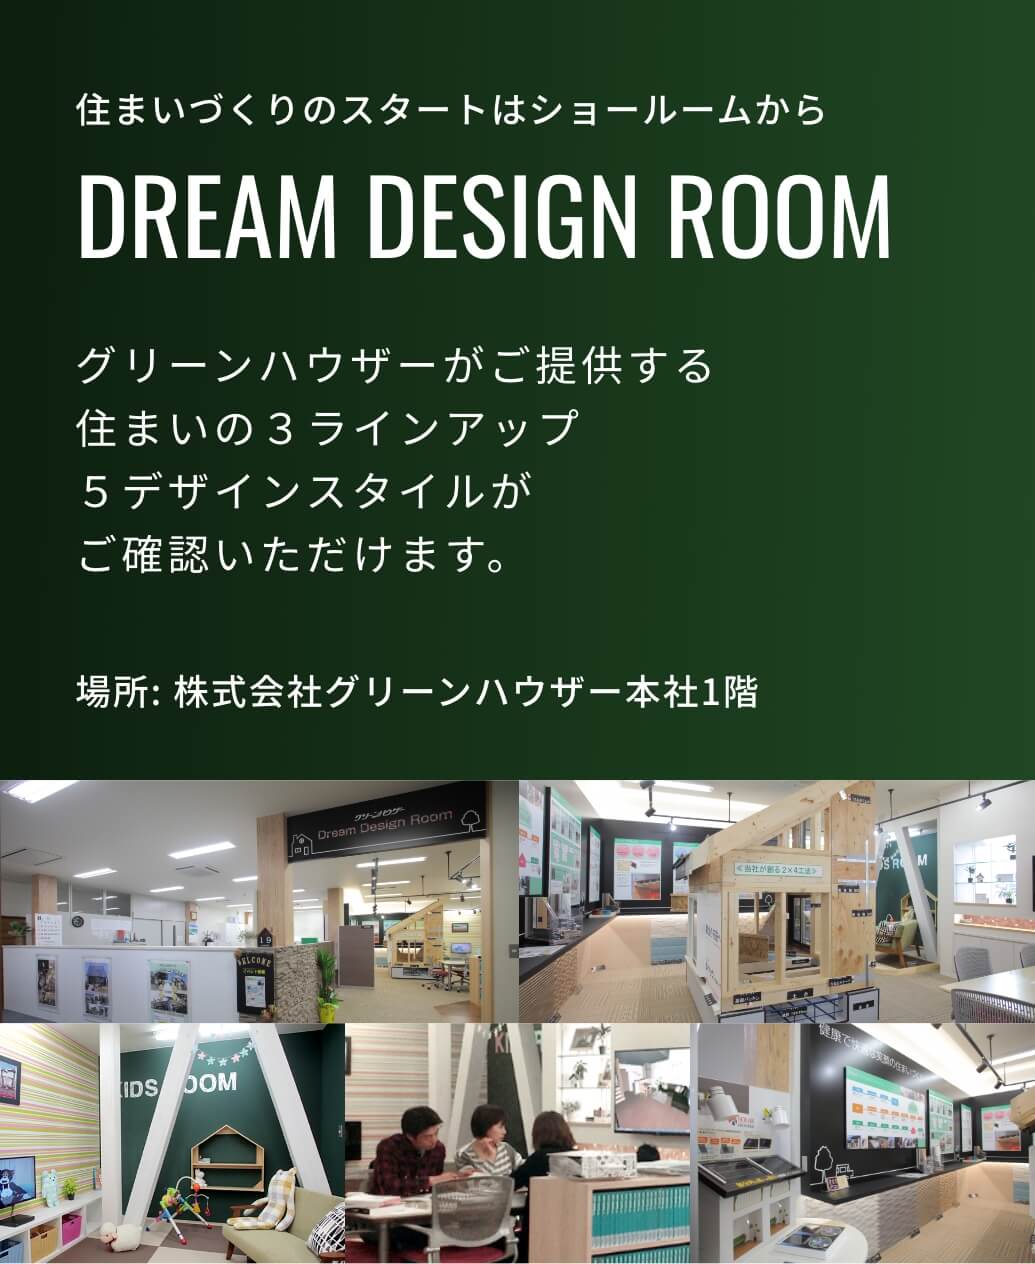 DREAM DESIGN ROOM